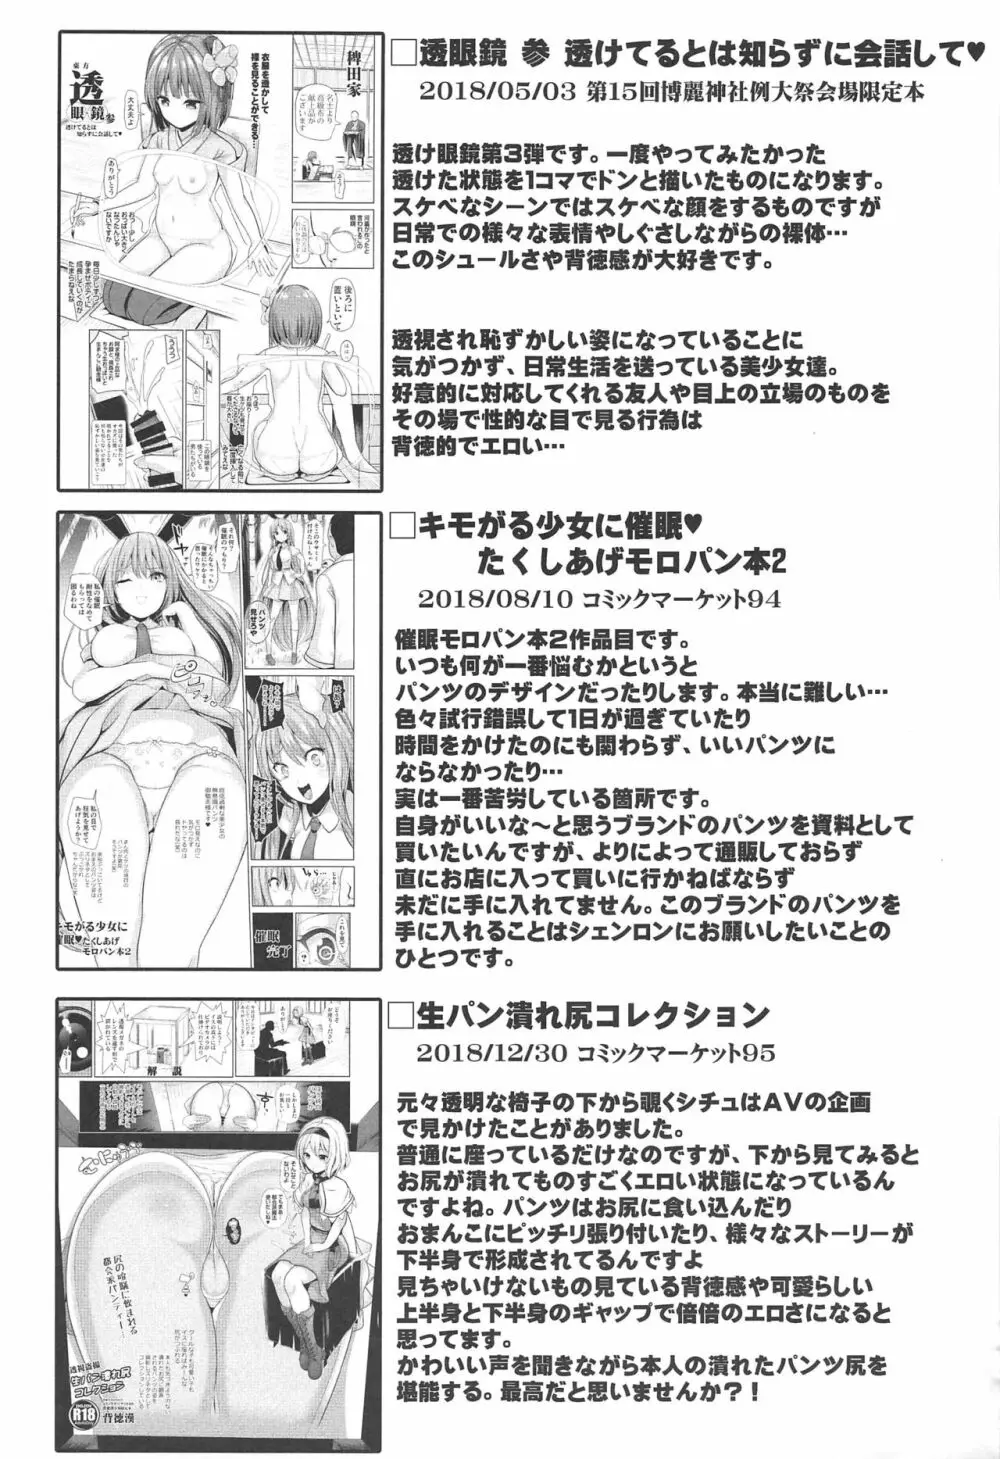 特殊シチュ短編総集編 東方シコるッ! 2 84ページ